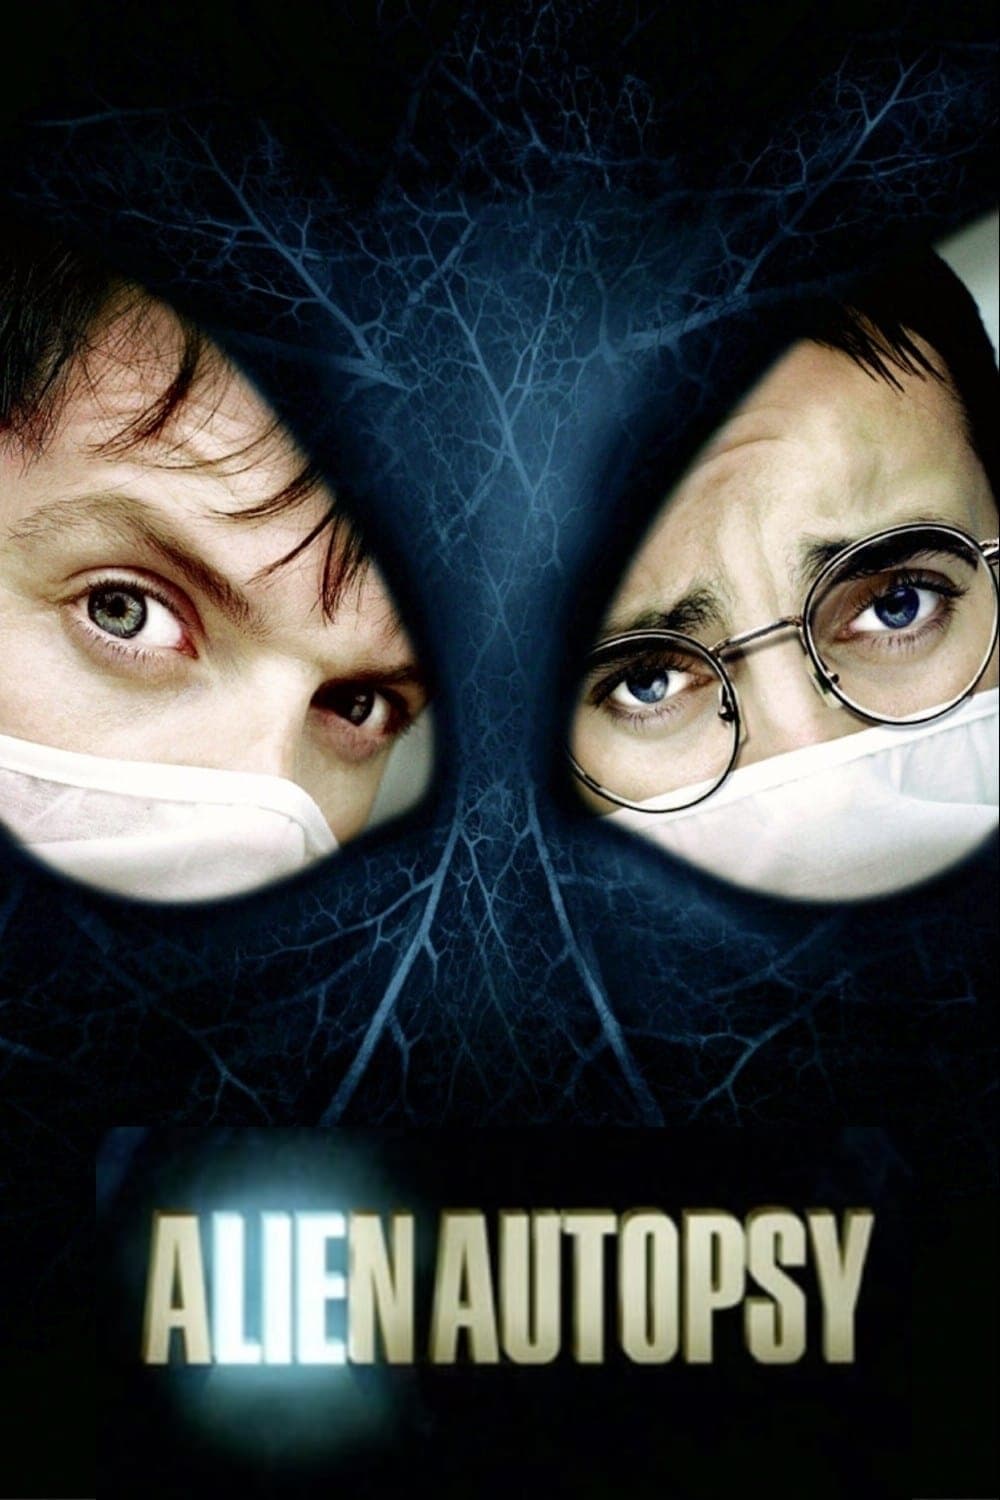 Alien Autopsy (2006)